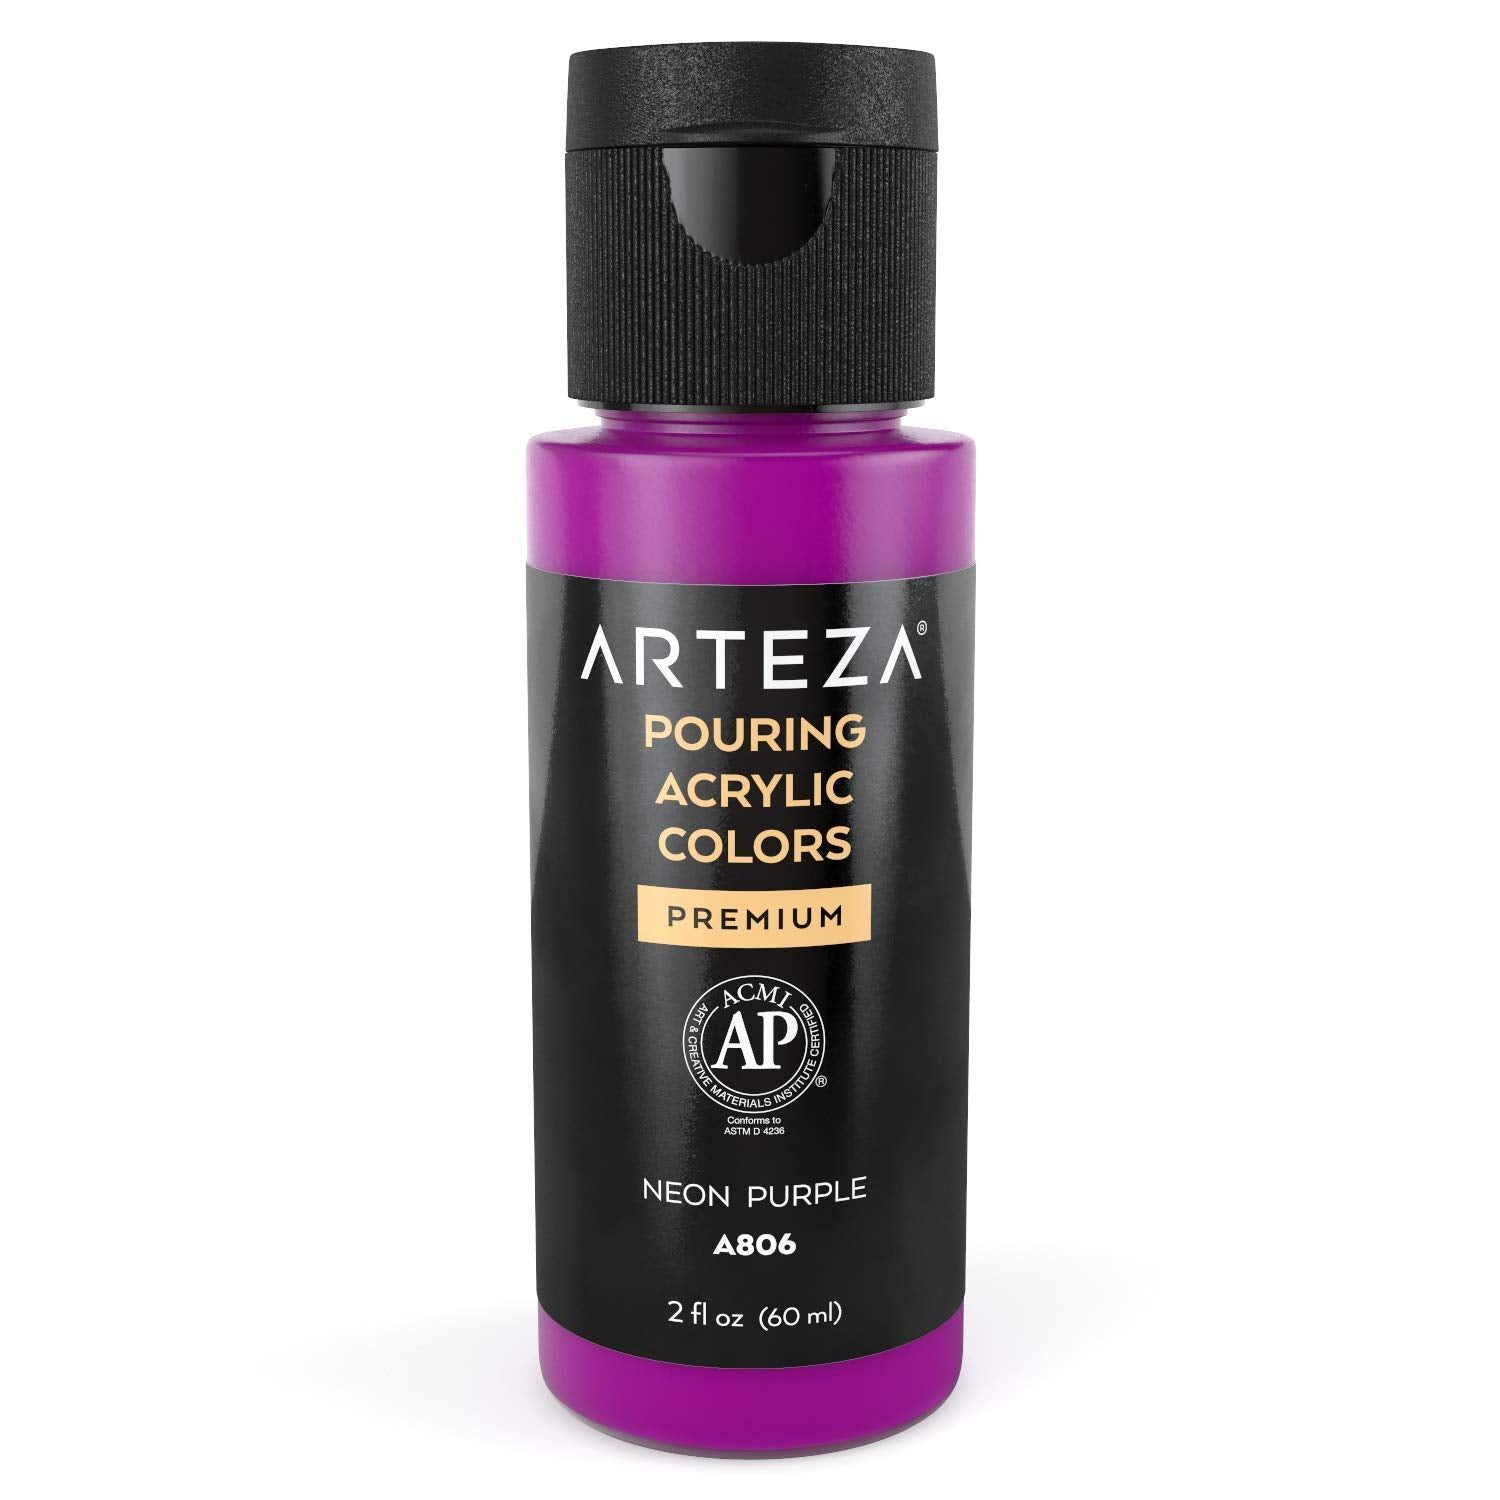 Arteza Pouring Acrylic Paint, 2oz Bottle - Neon Purple